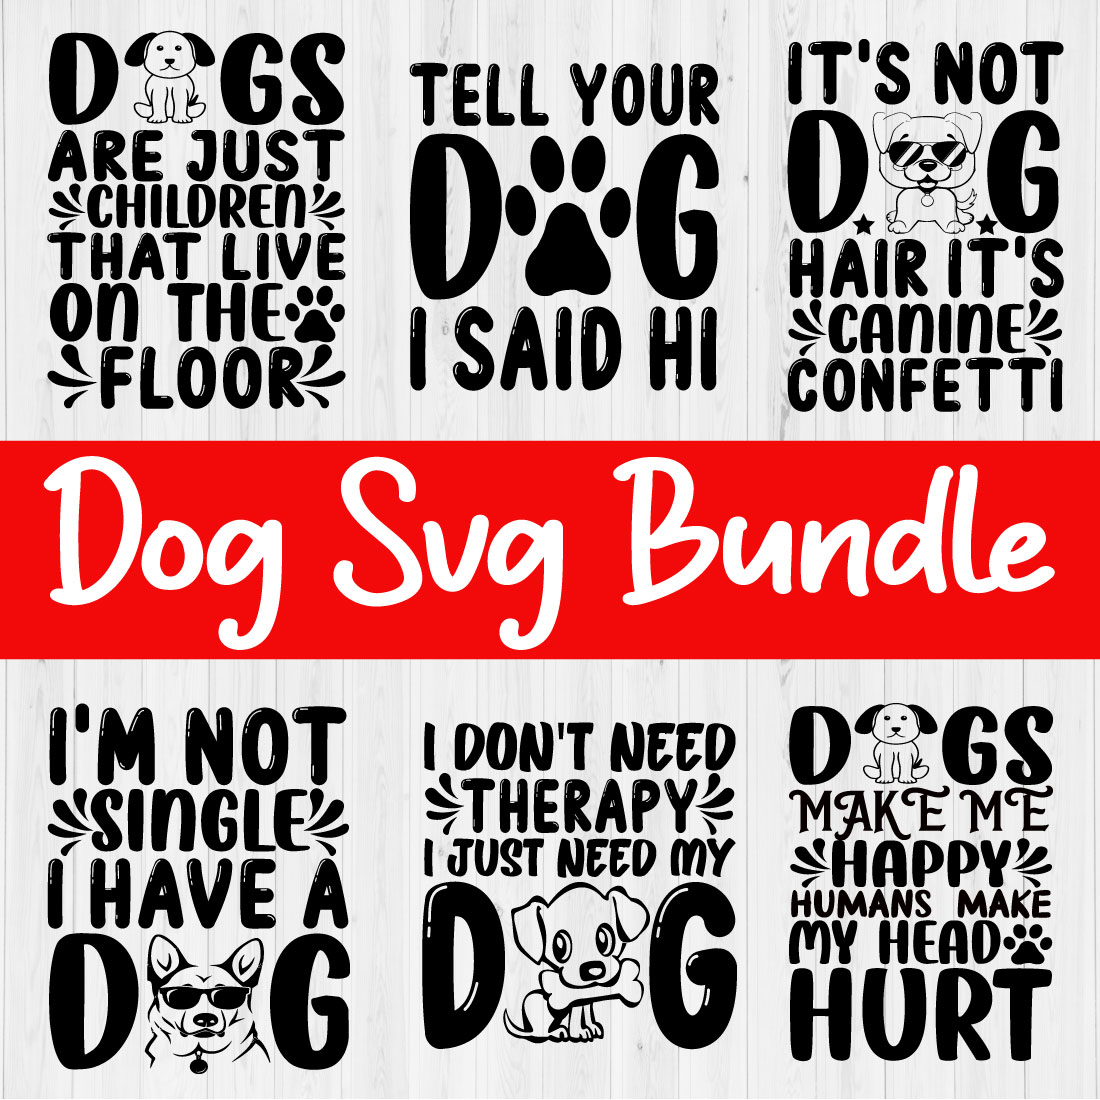 Dog Svg Bundle Vol1 cover image.